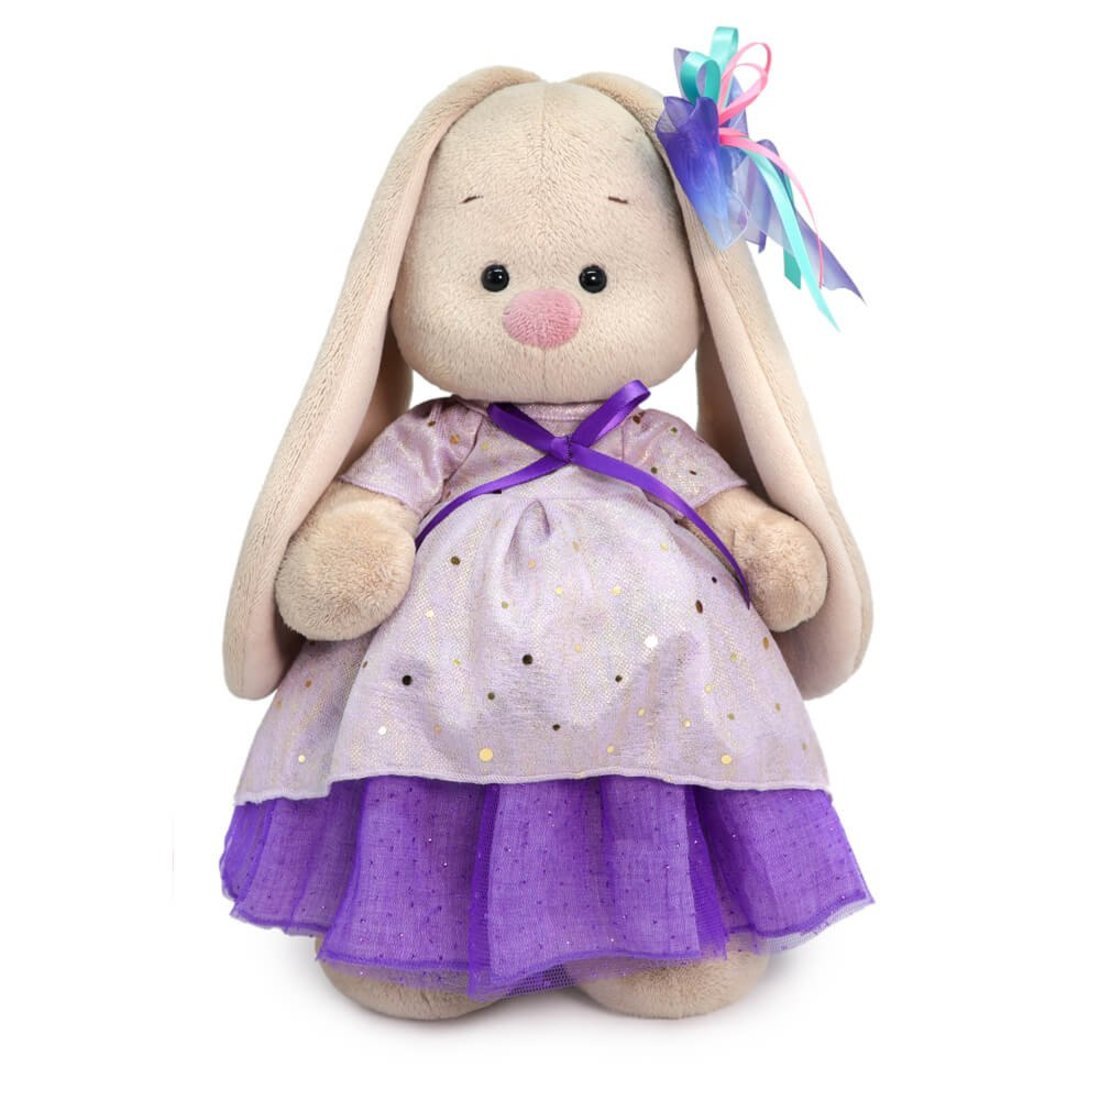 Мягкая игрушка Basik&Ko Зайка Ми в платье с блестками 25 см StS-436 мягкая игрушка зайка в платье на подвеске